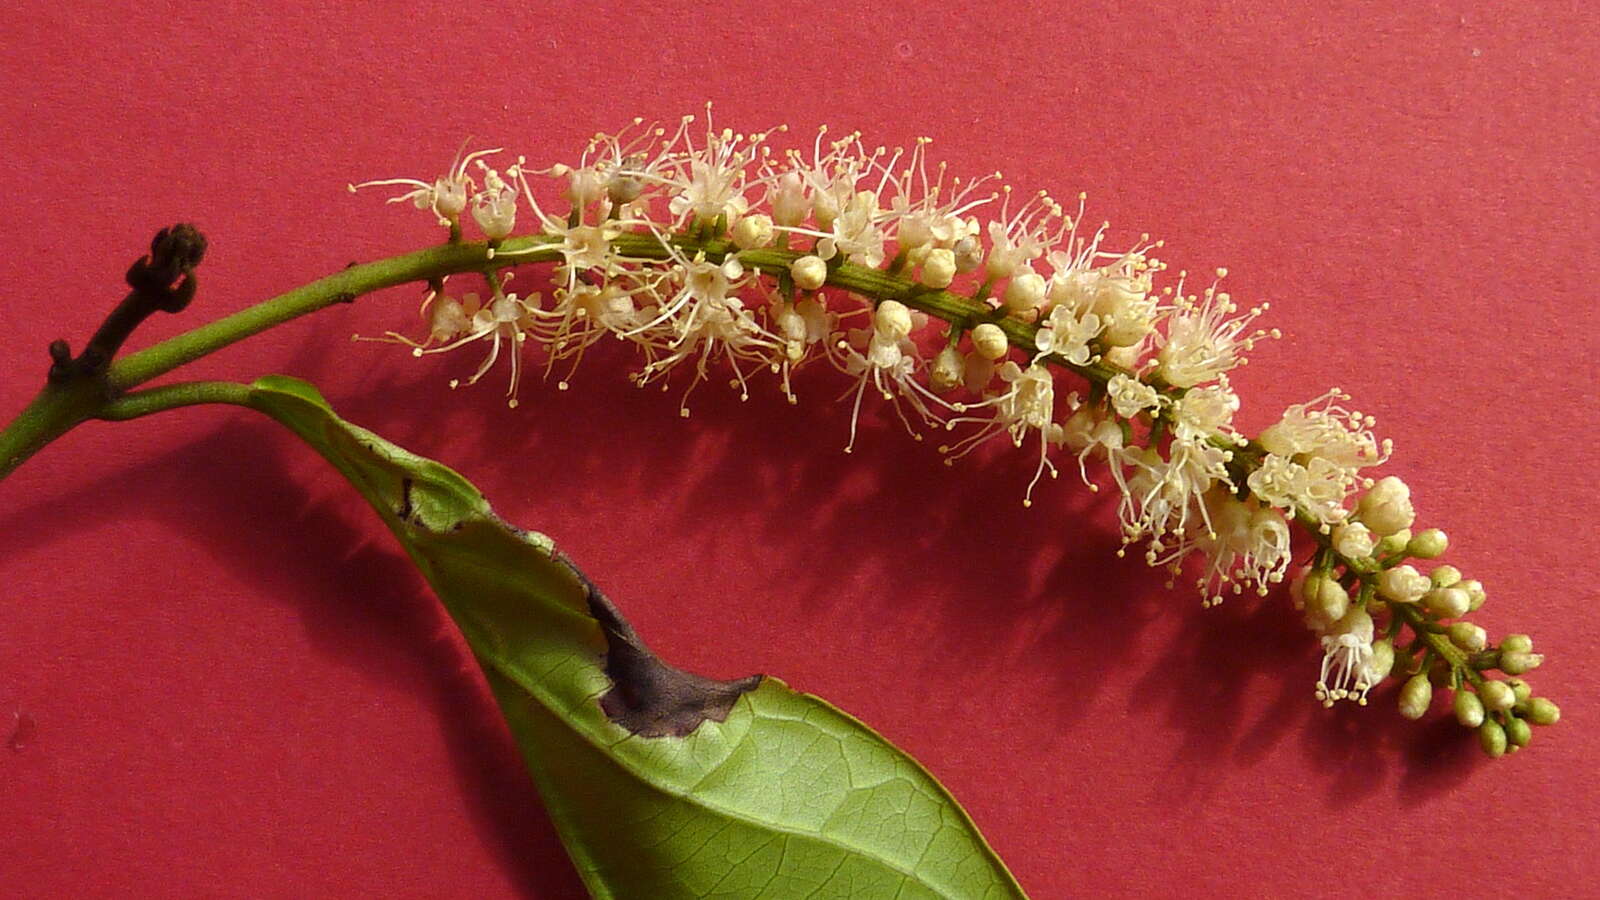 Image of Combretum fruticosum (Loefl.) Stuntz